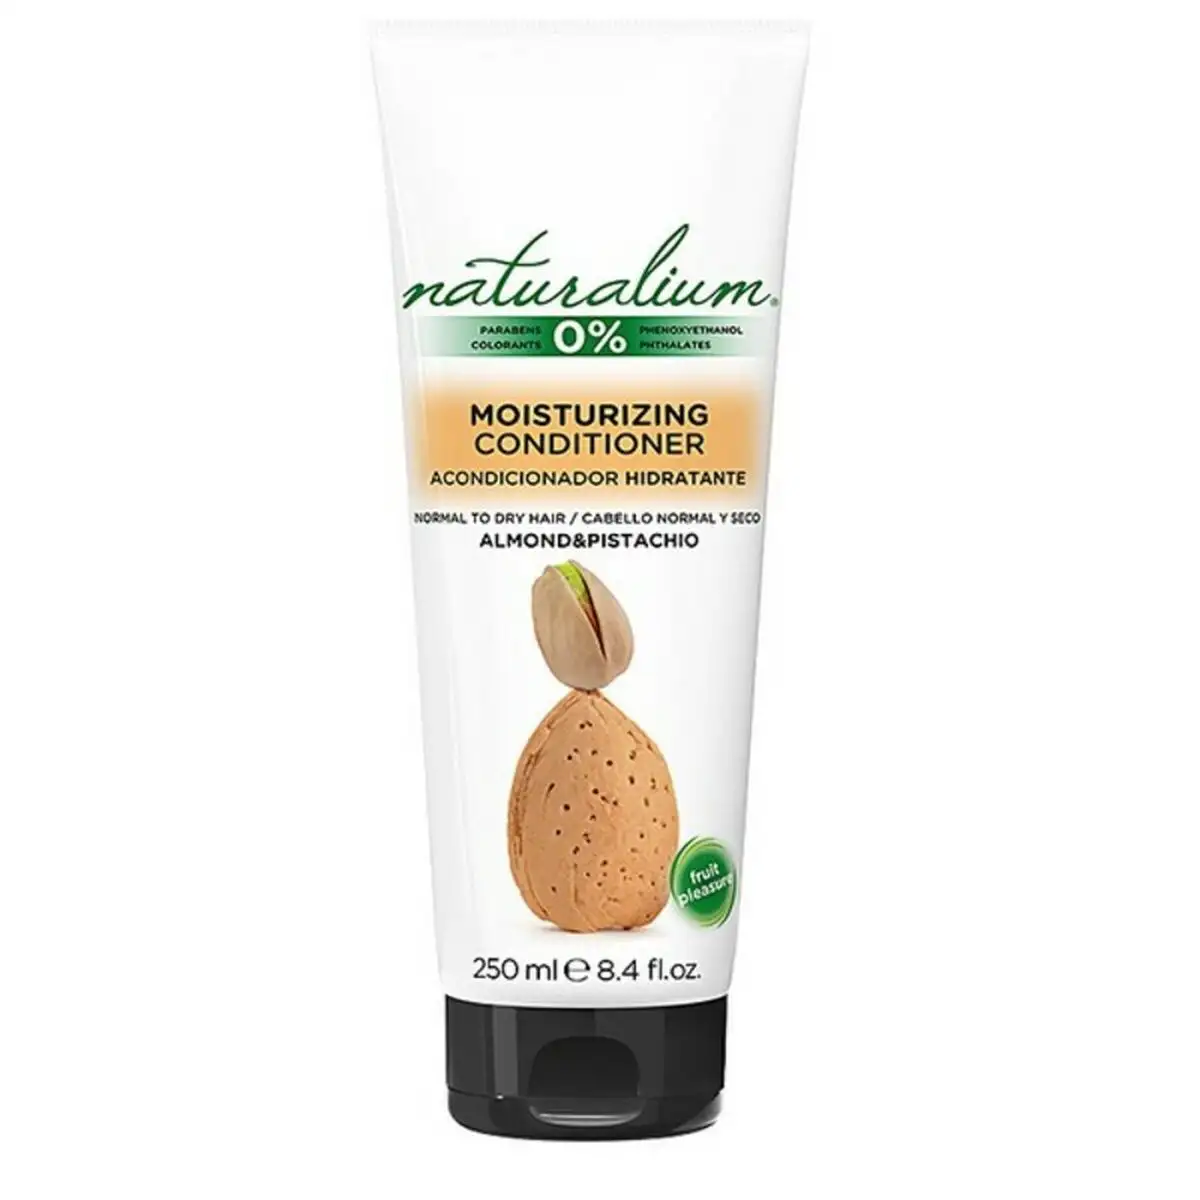 Apres shampoing reparateur almond pistachio naturalium 250 ml 250 ml _2628. DIAYTAR SENEGAL - Votre Passage vers le Raffinement. Plongez dans notre univers de produits exquis et choisissez des articles qui ajoutent une touche de sophistication à votre vie.